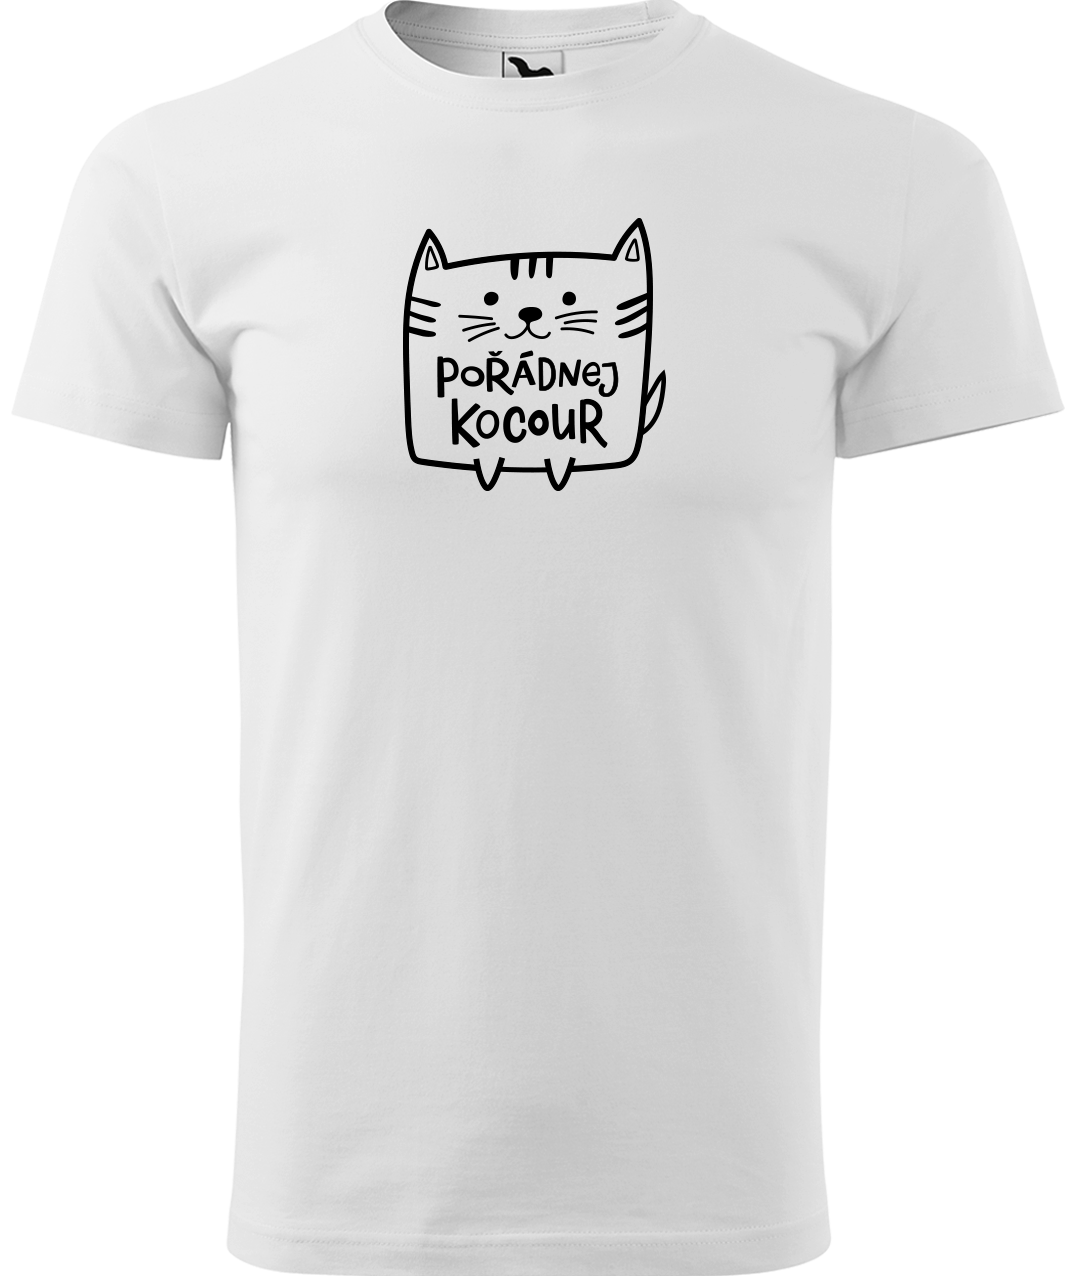 Pánské tričko s kočkou - Pořádnej kocour Velikost: L, Barva: Bílá (00)